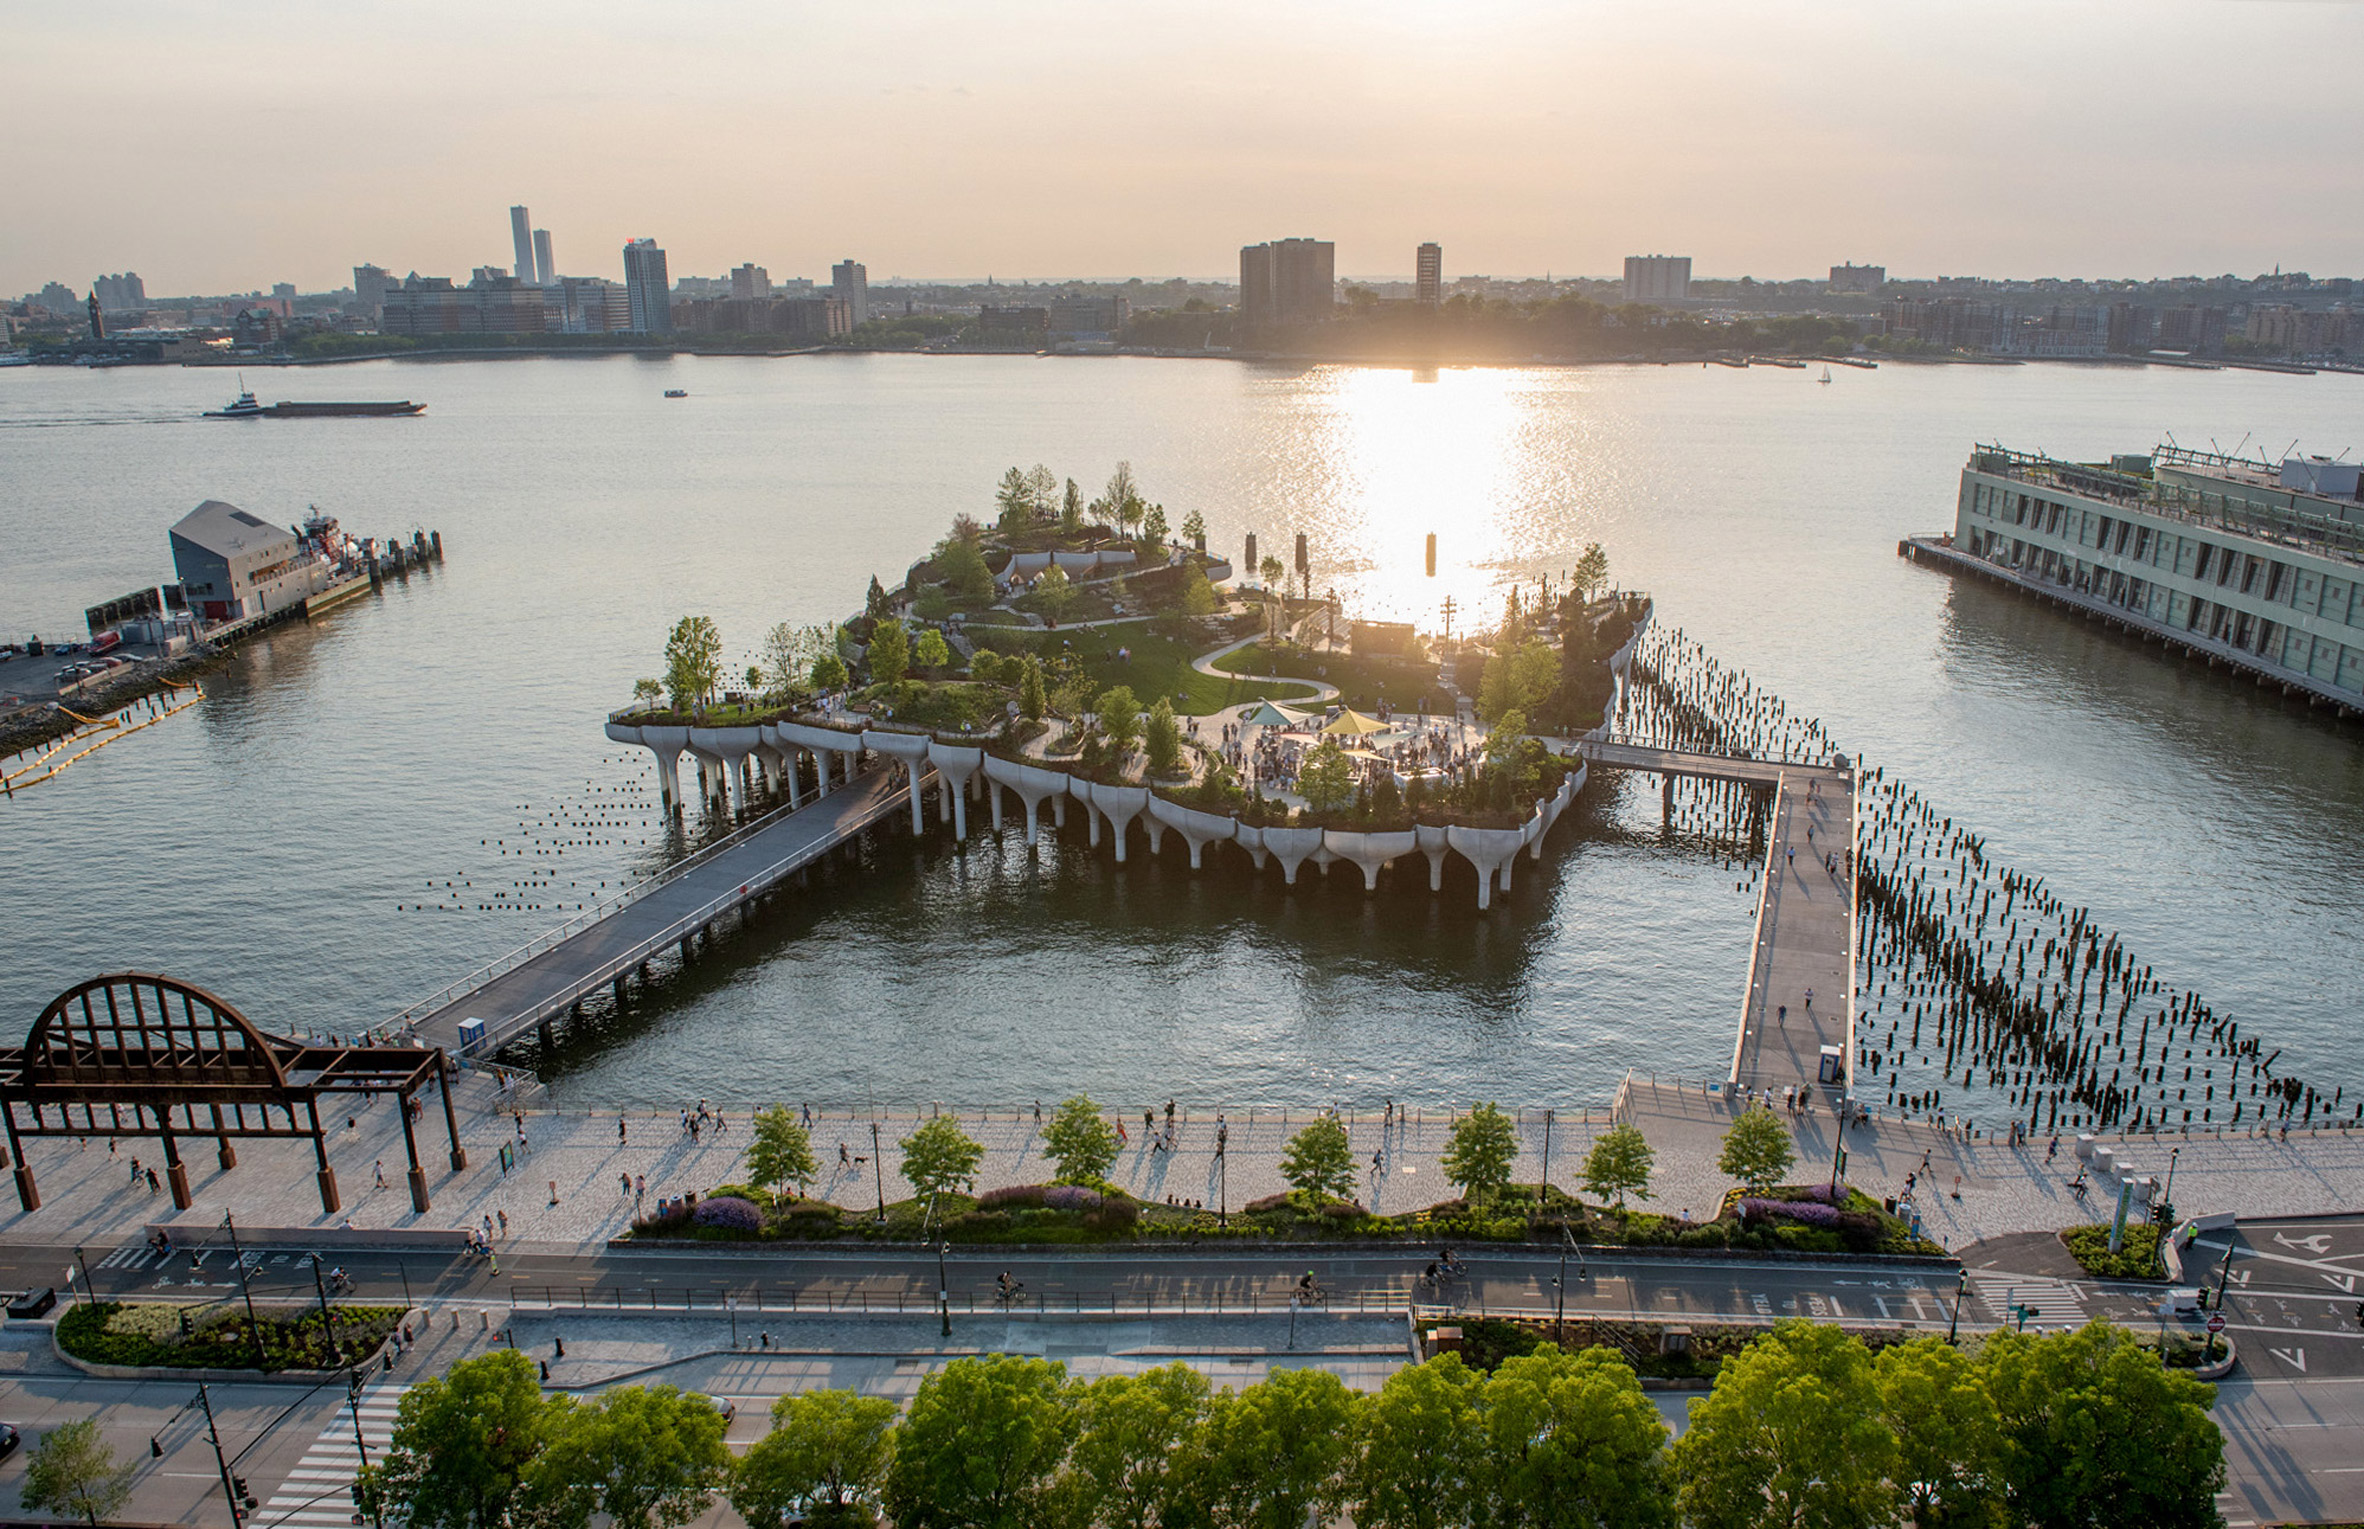 Bridges connect Little Island to mainland Manhattan